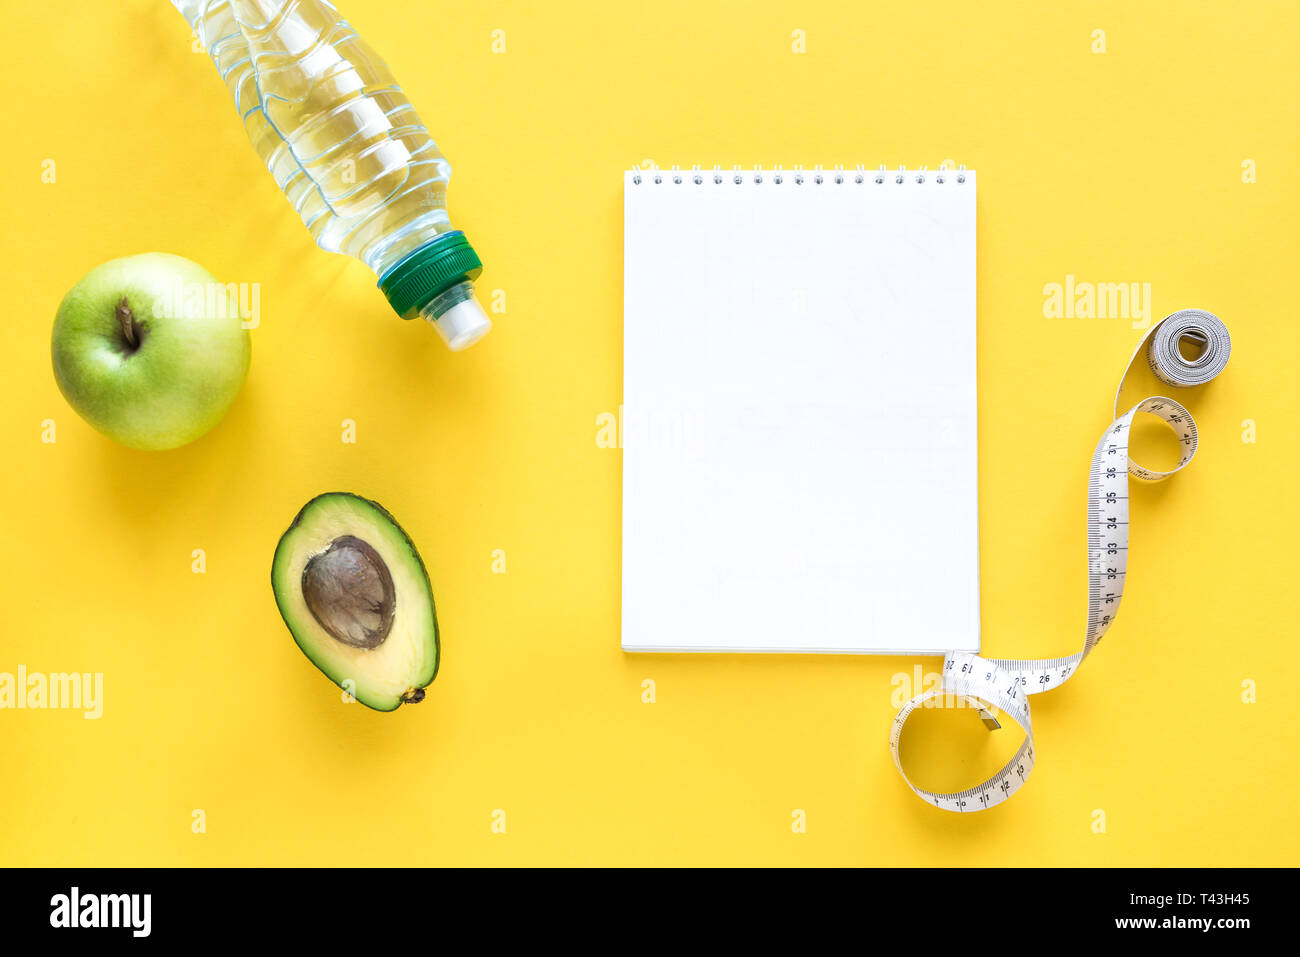 Gesunde Ernährung Konzept auf Gelb, Ansicht von oben, kopieren. Maßband, grüner Apfel, Avocado und Wasser für gesunde Ernährung und Gewichtsreduktion Diät. Stockfoto